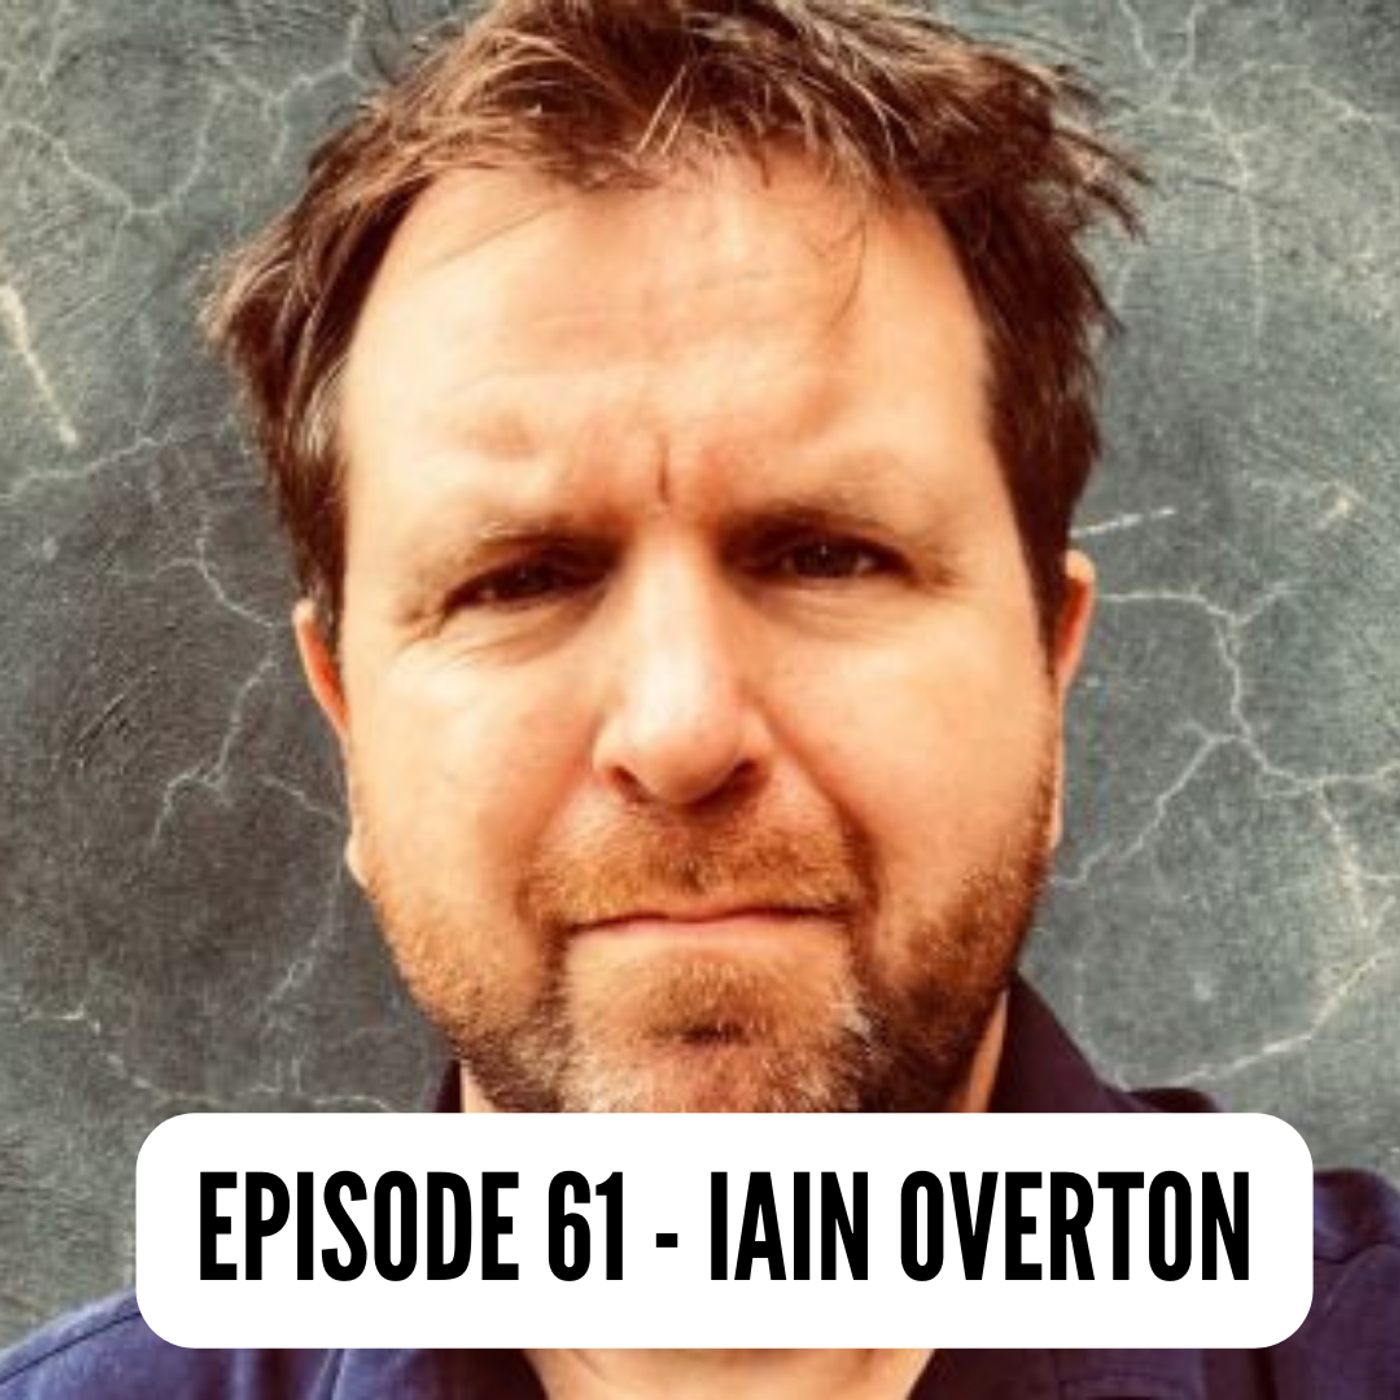 Episode 61: Iain Overton